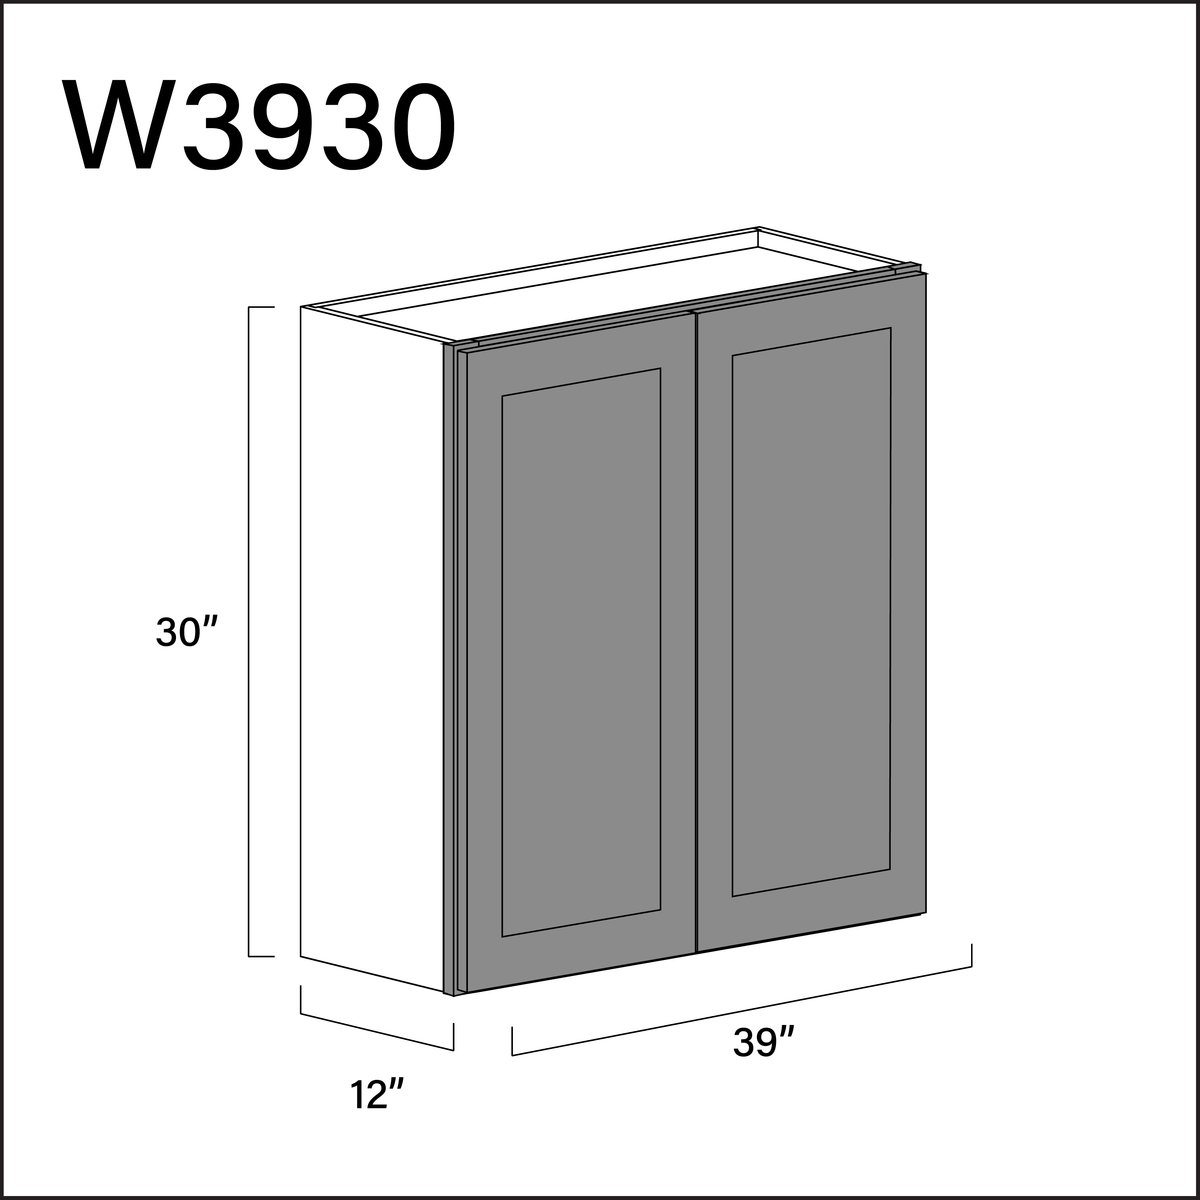 Gray Shaker Double Door Wall Cabinet - 39" W x 30" H x 12" D